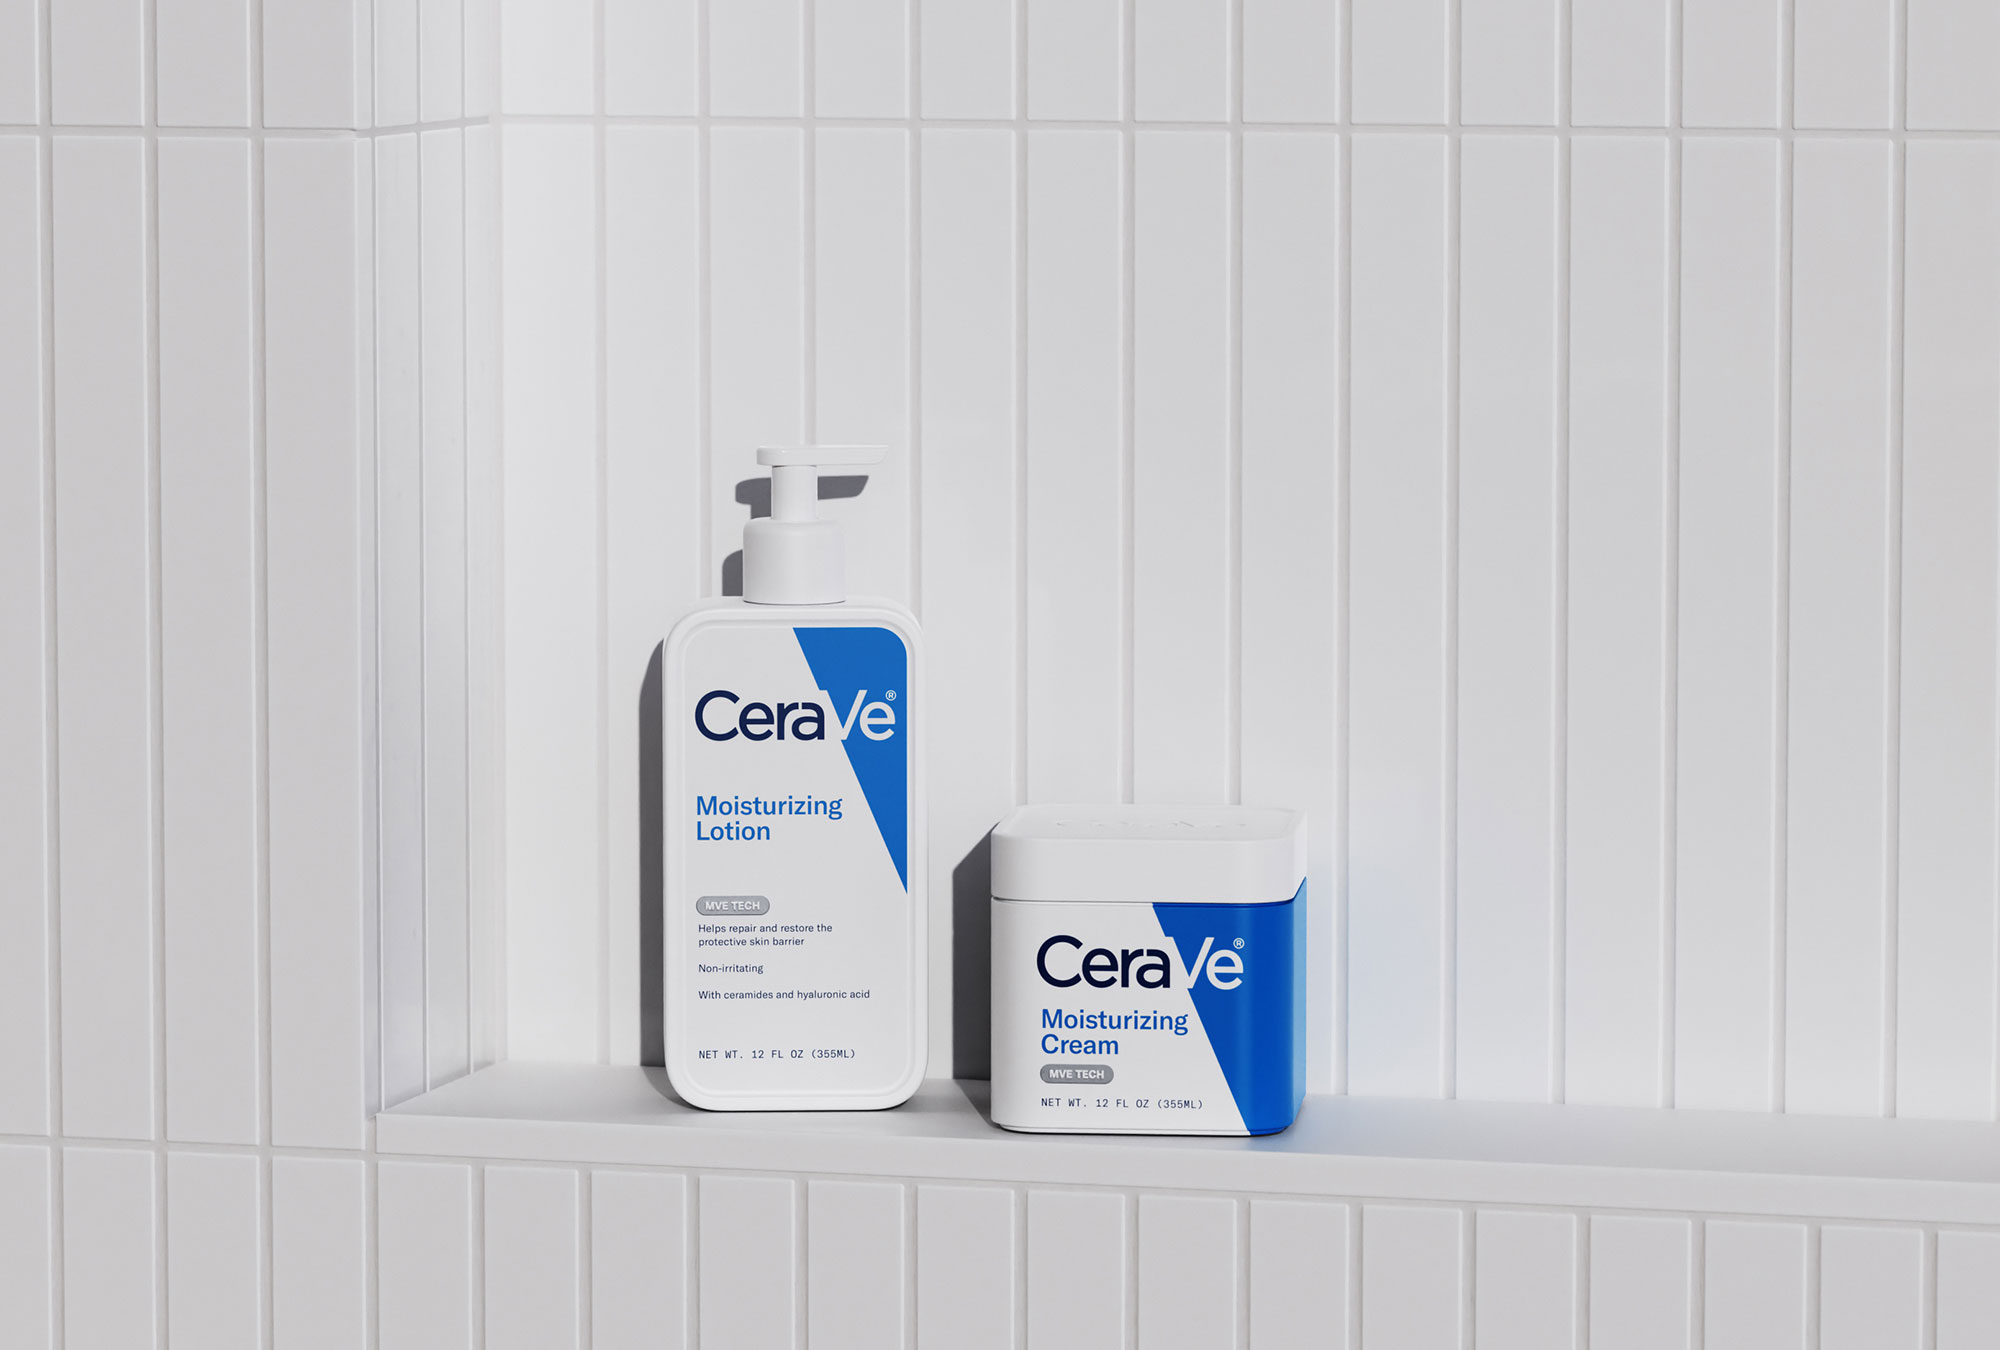 cerave_packaging_shower